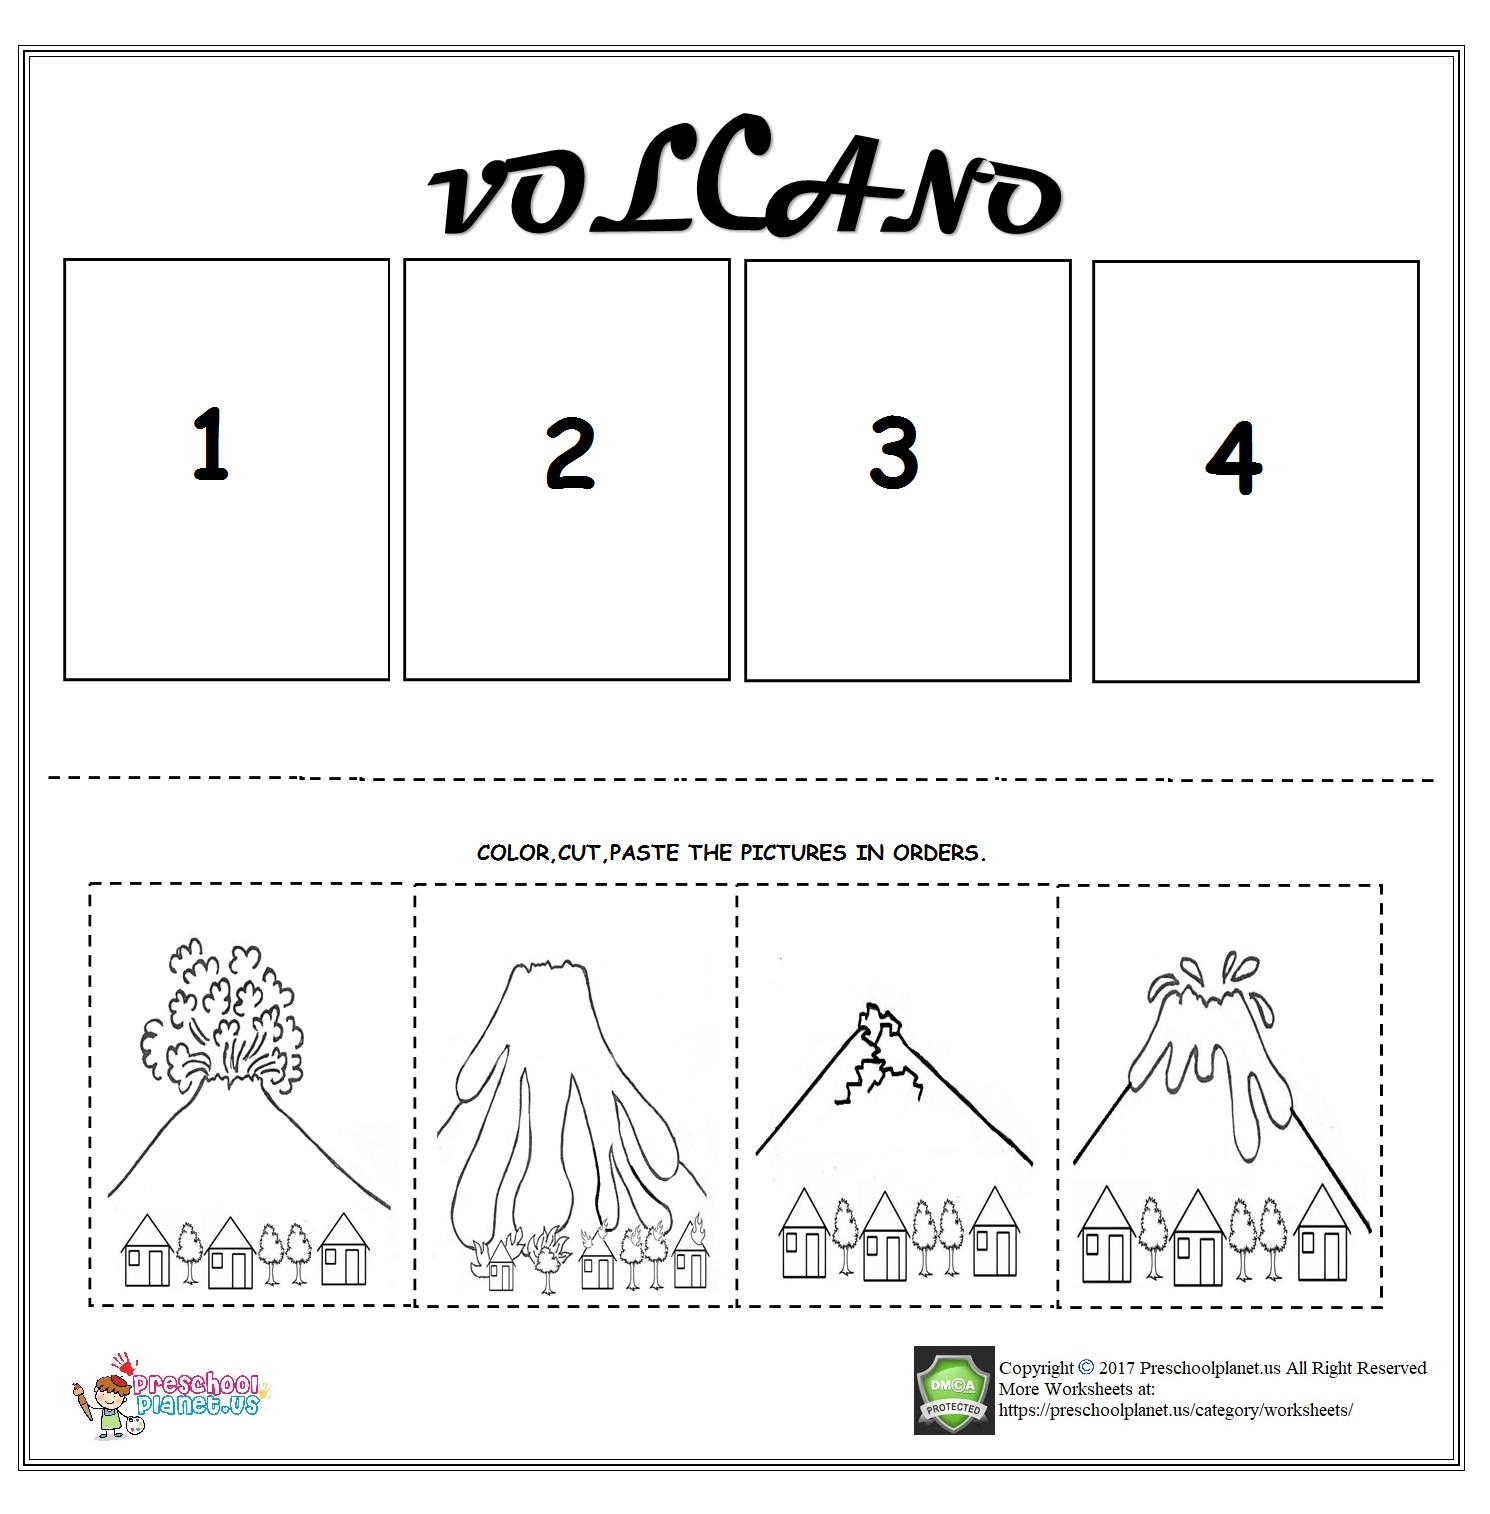 Volcano sequencing worksheet for kids – Preschoolplanet